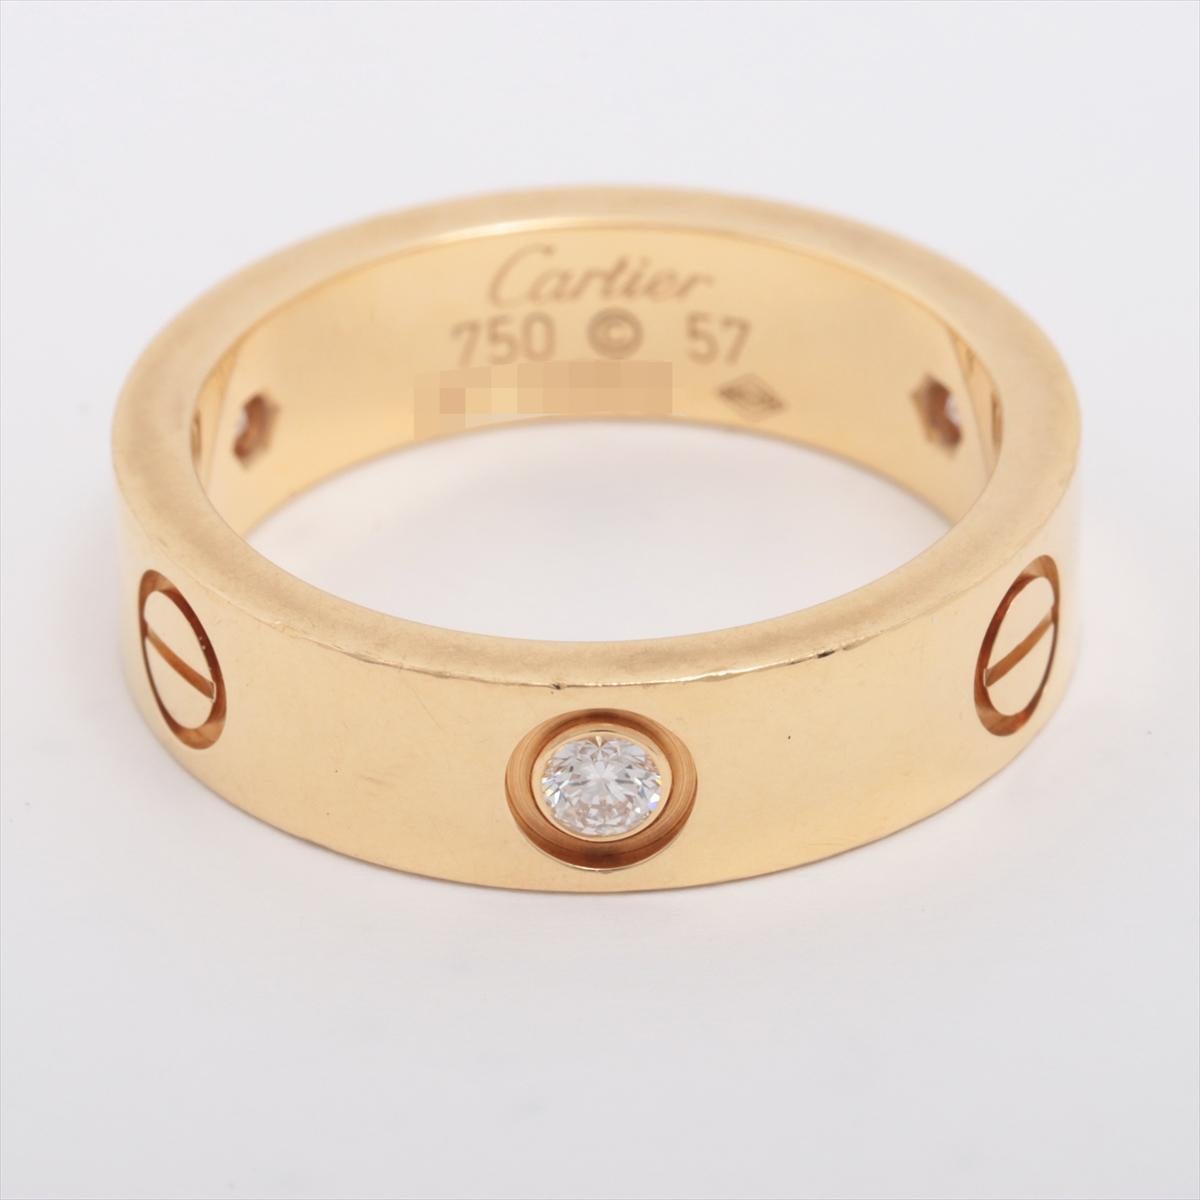 Marke : Cartier
Beschreibung: Cartier Love halb Diamantringe 
Metall Typ: 750YG/Gelbgold
Gewicht 9.5g
Größe 57
Zustand: Gebraucht; leichte Gebrauchsspuren
Box -  Nicht inbegriffen
Papiere - Eingeschlossen
